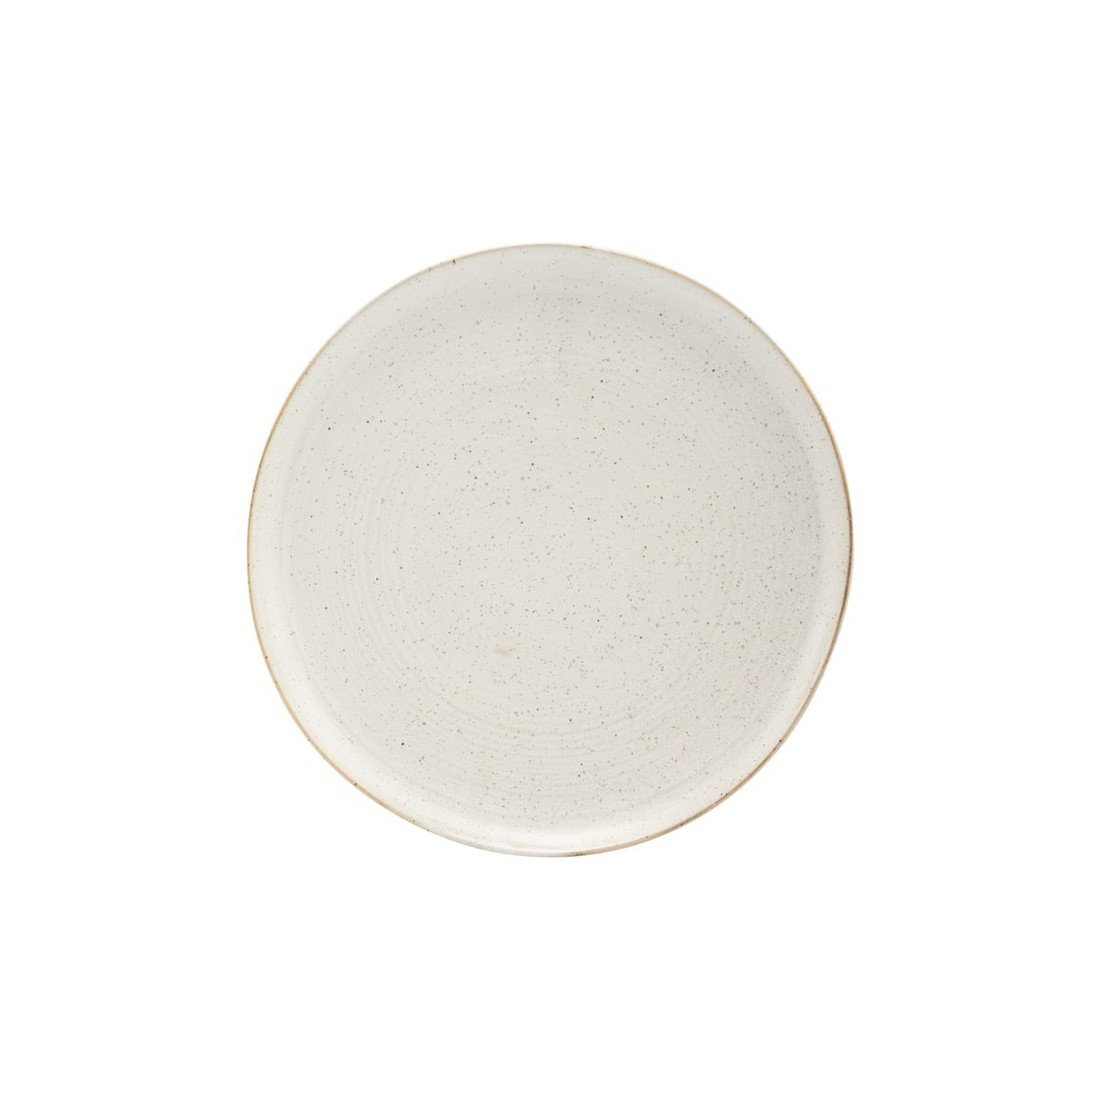 Mělký talíř 21,5 cm PION House Doctor - šedobíly